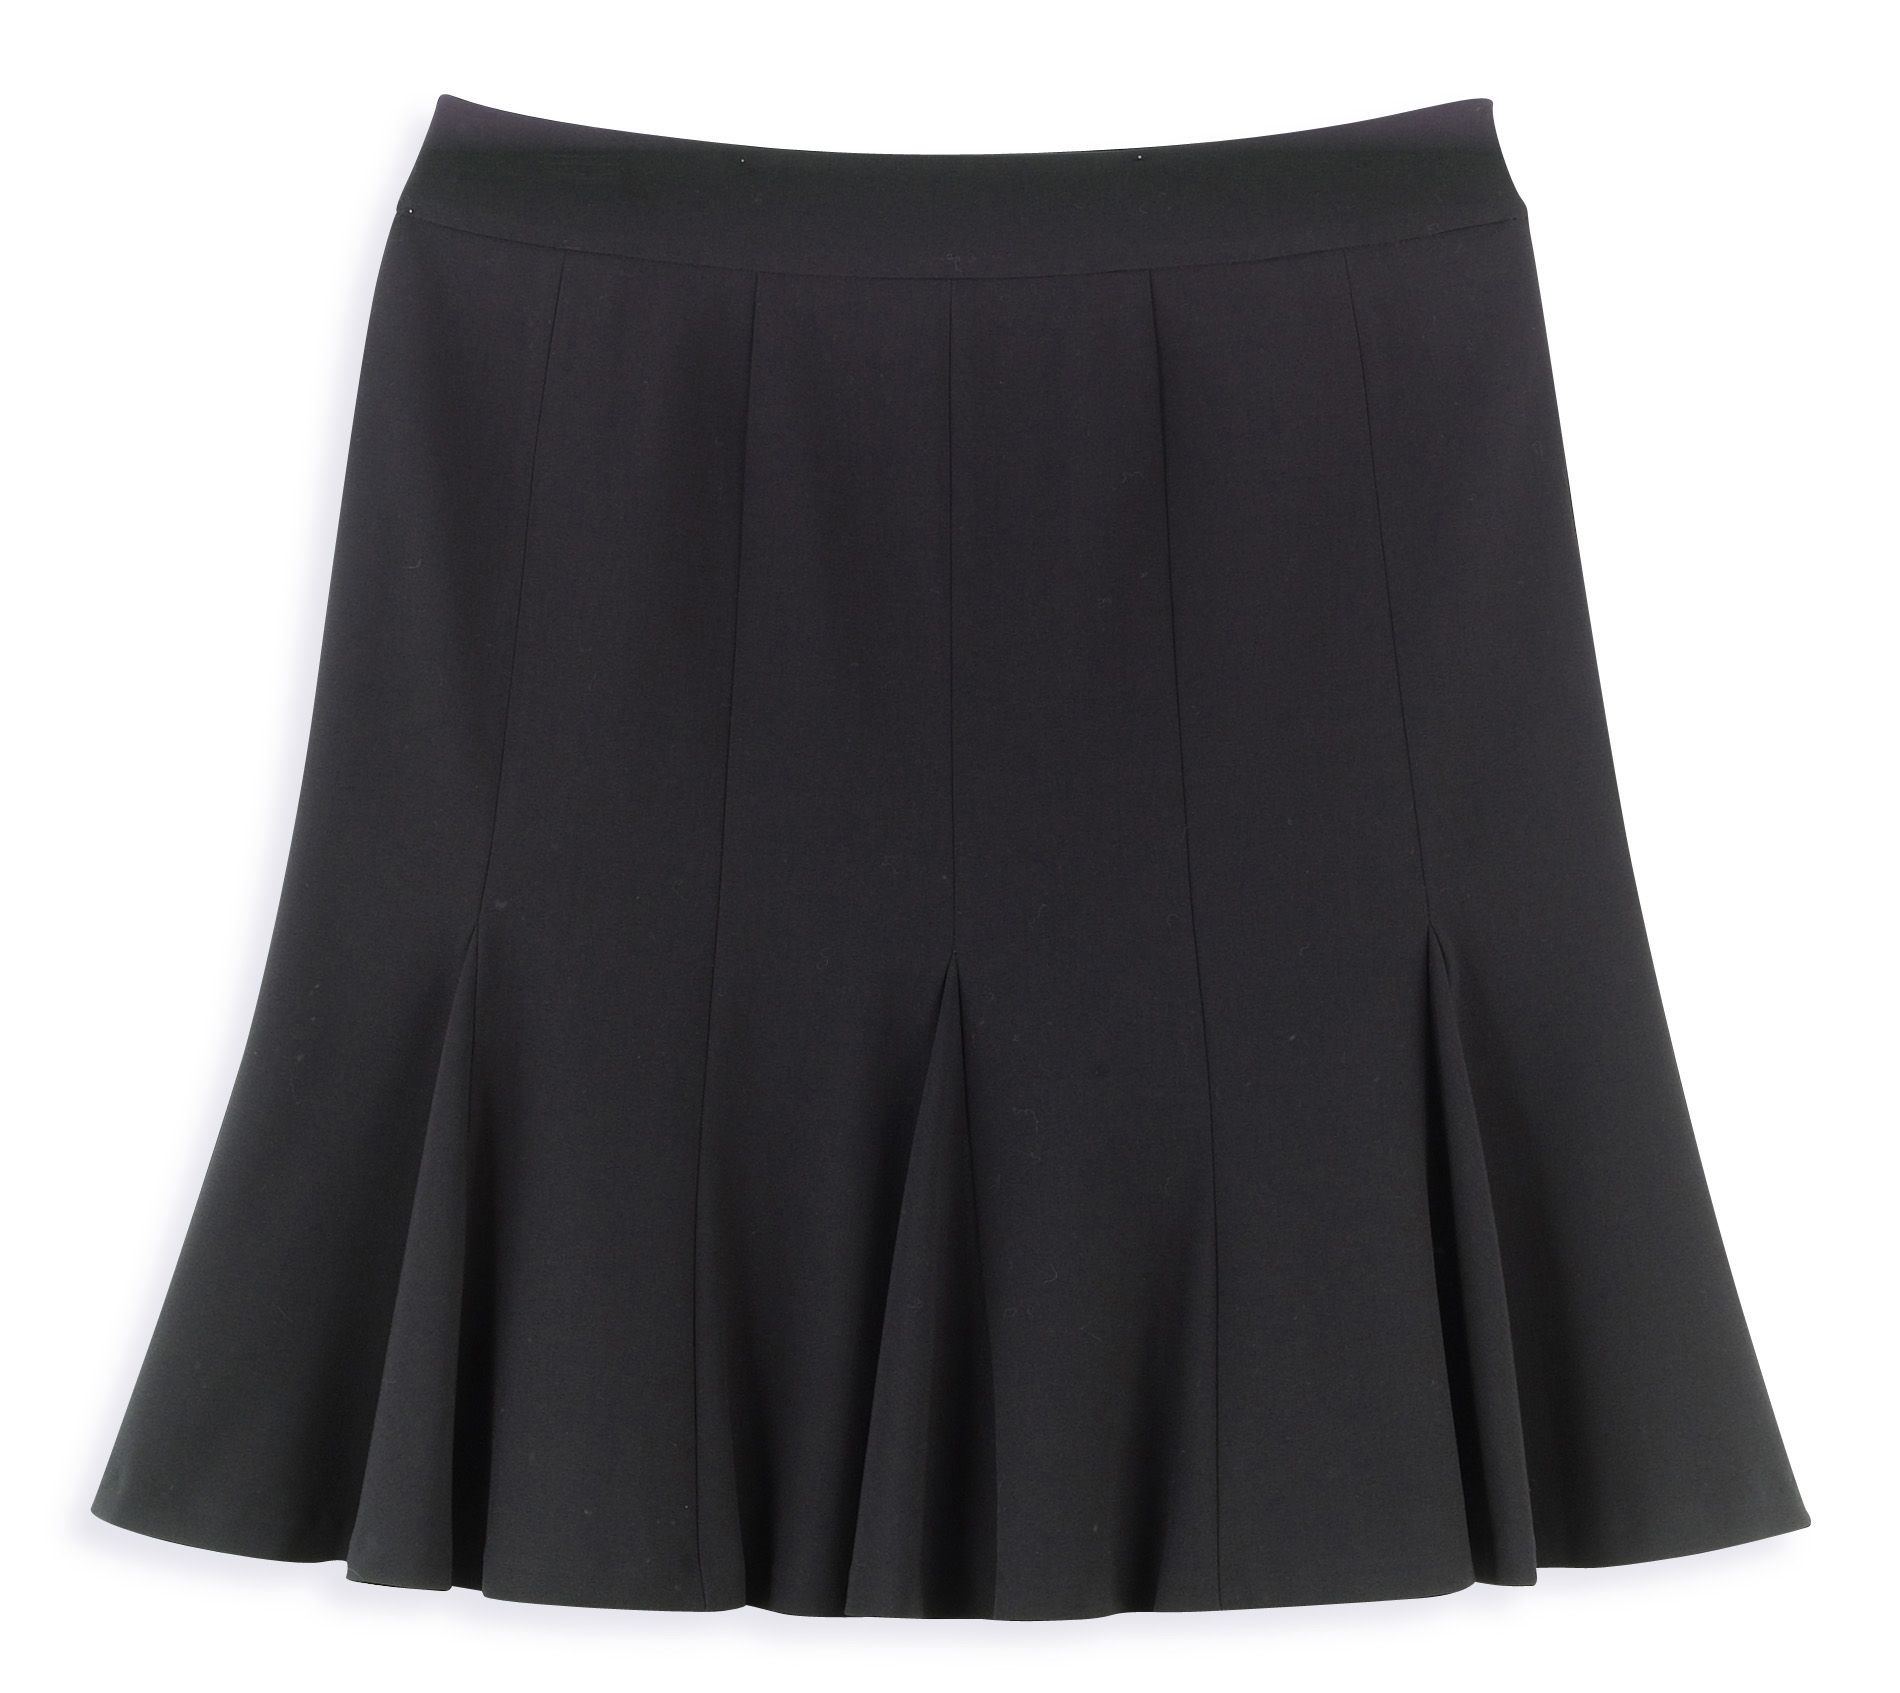 Metaphor Women's Plus Essentials Suiting Skirt